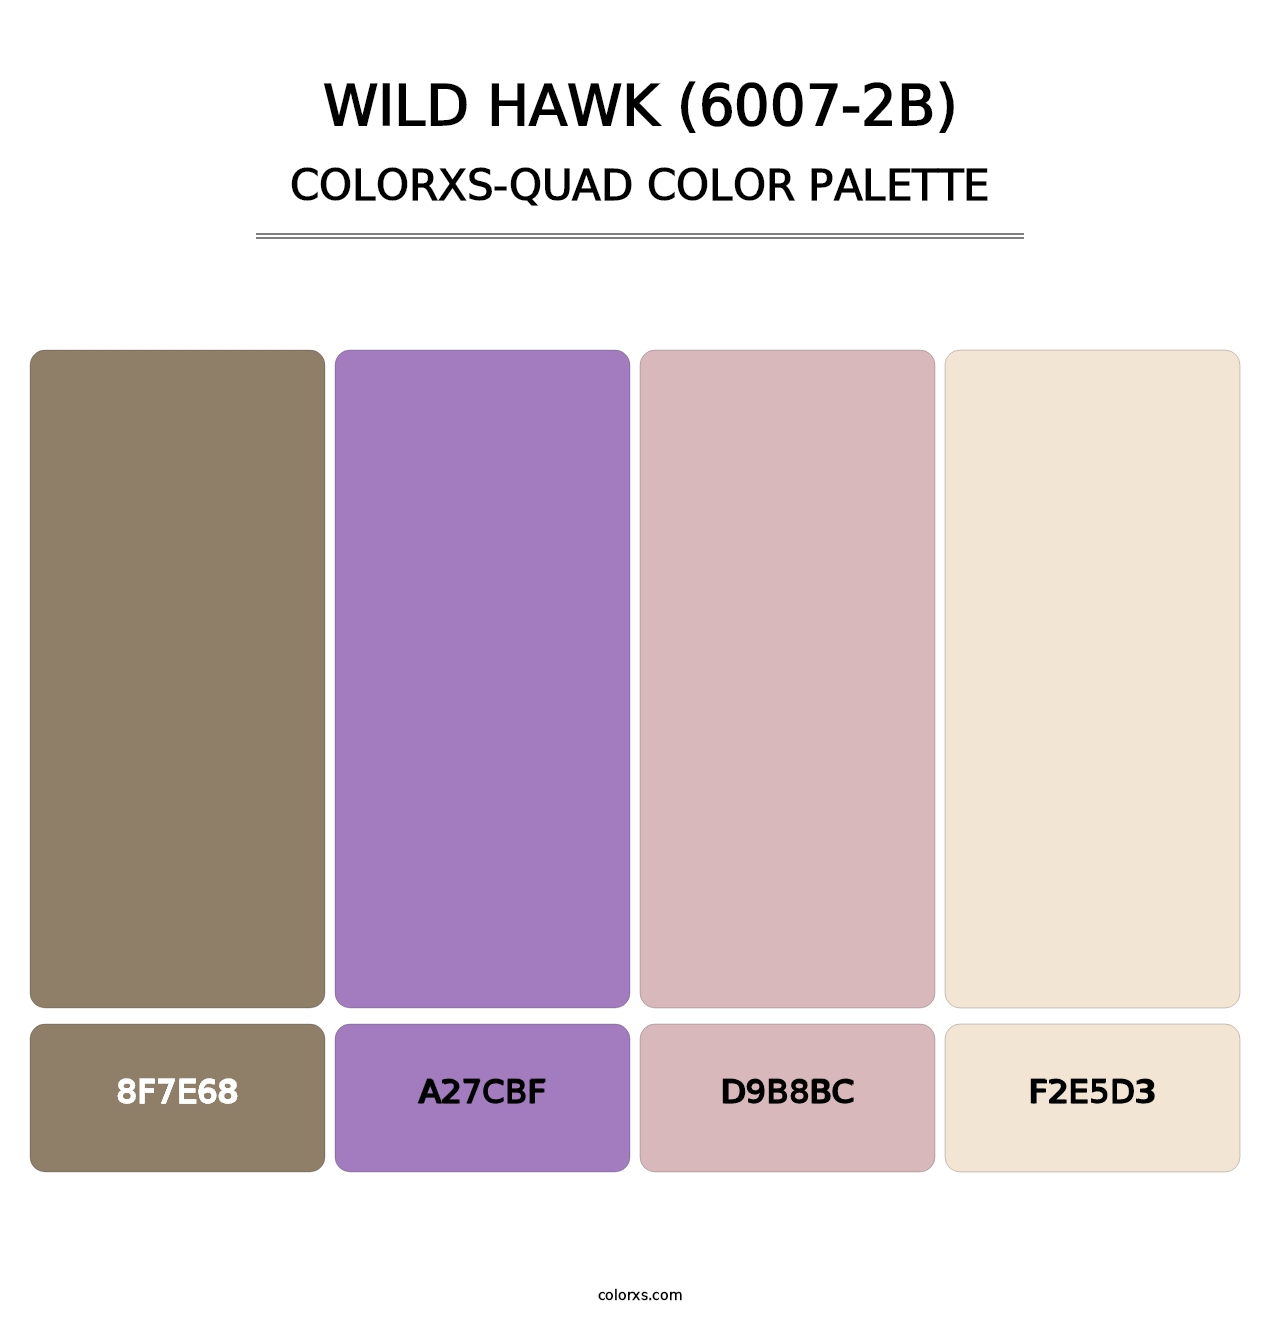 Wild Hawk (6007-2B) - Colorxs Quad Palette